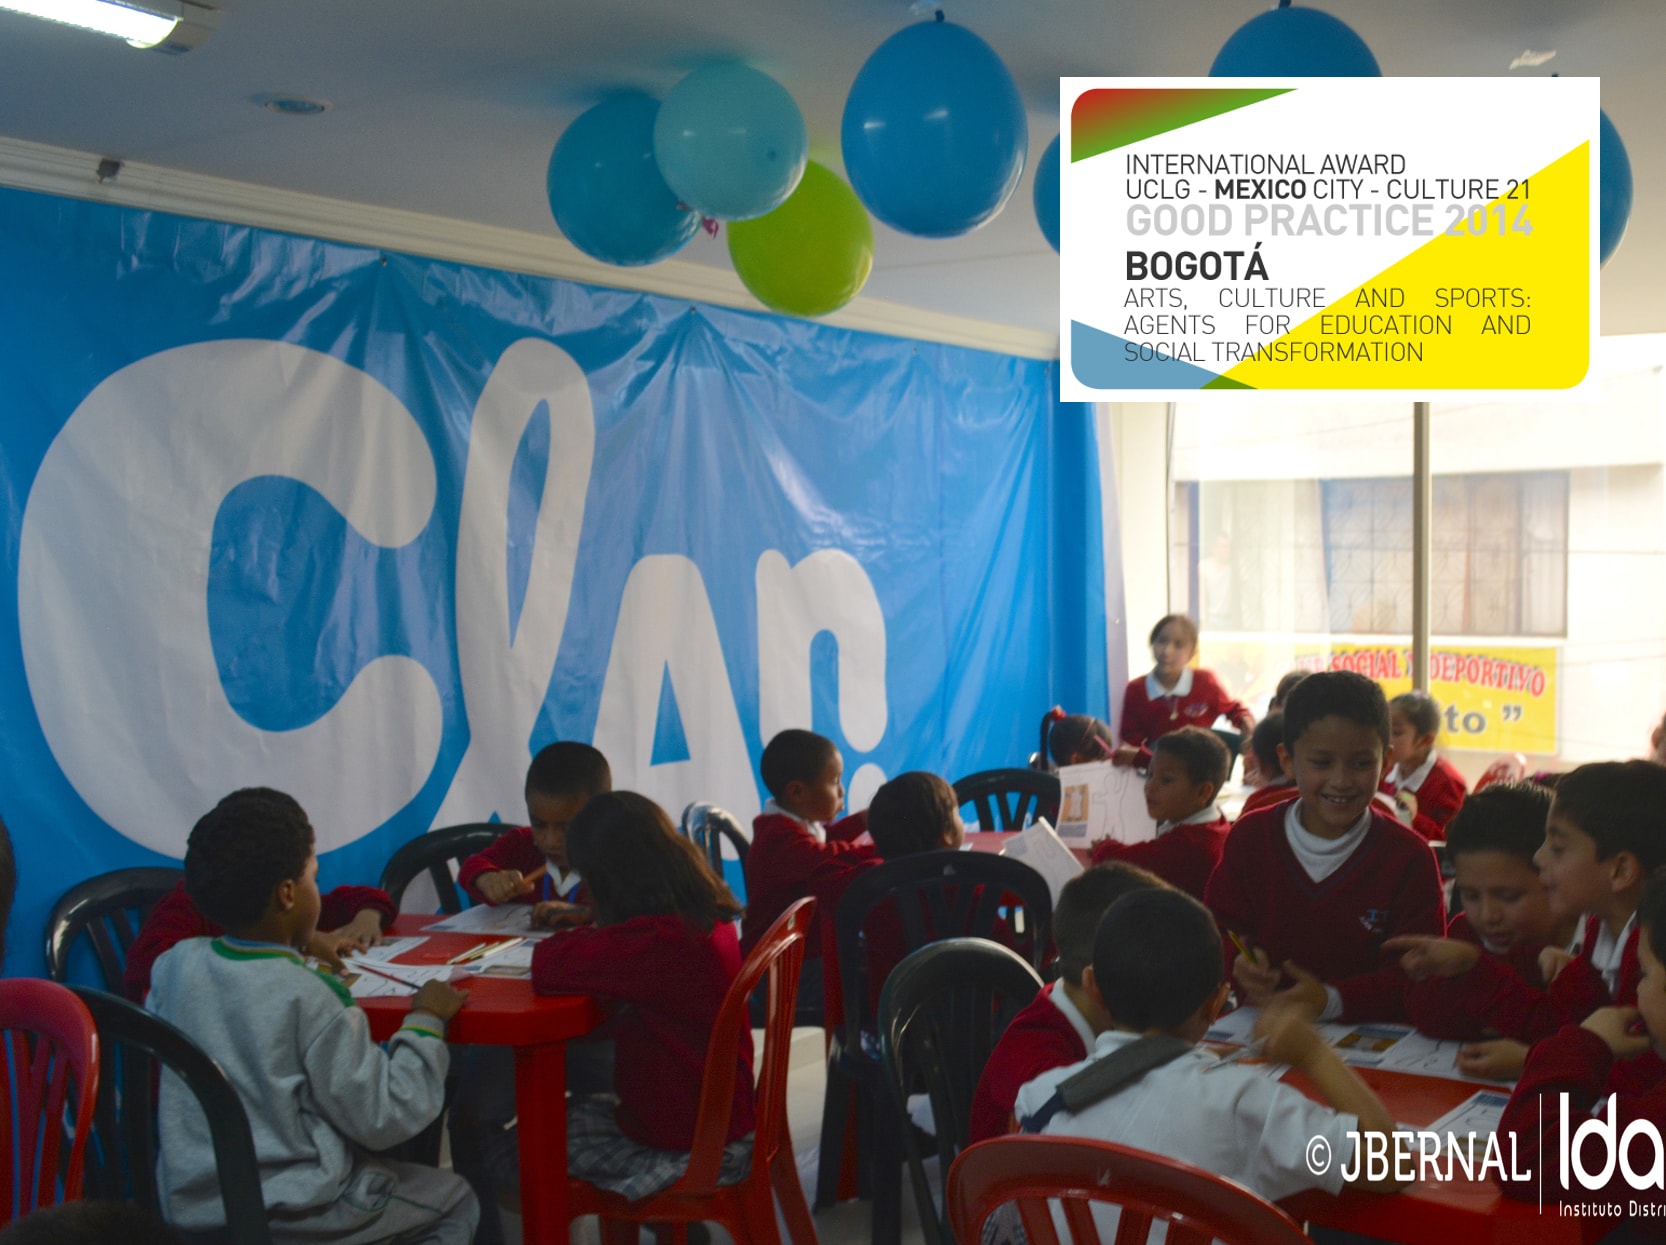 Arte, cultura y deporte: agentes educativos y de transformación social, Bogotá